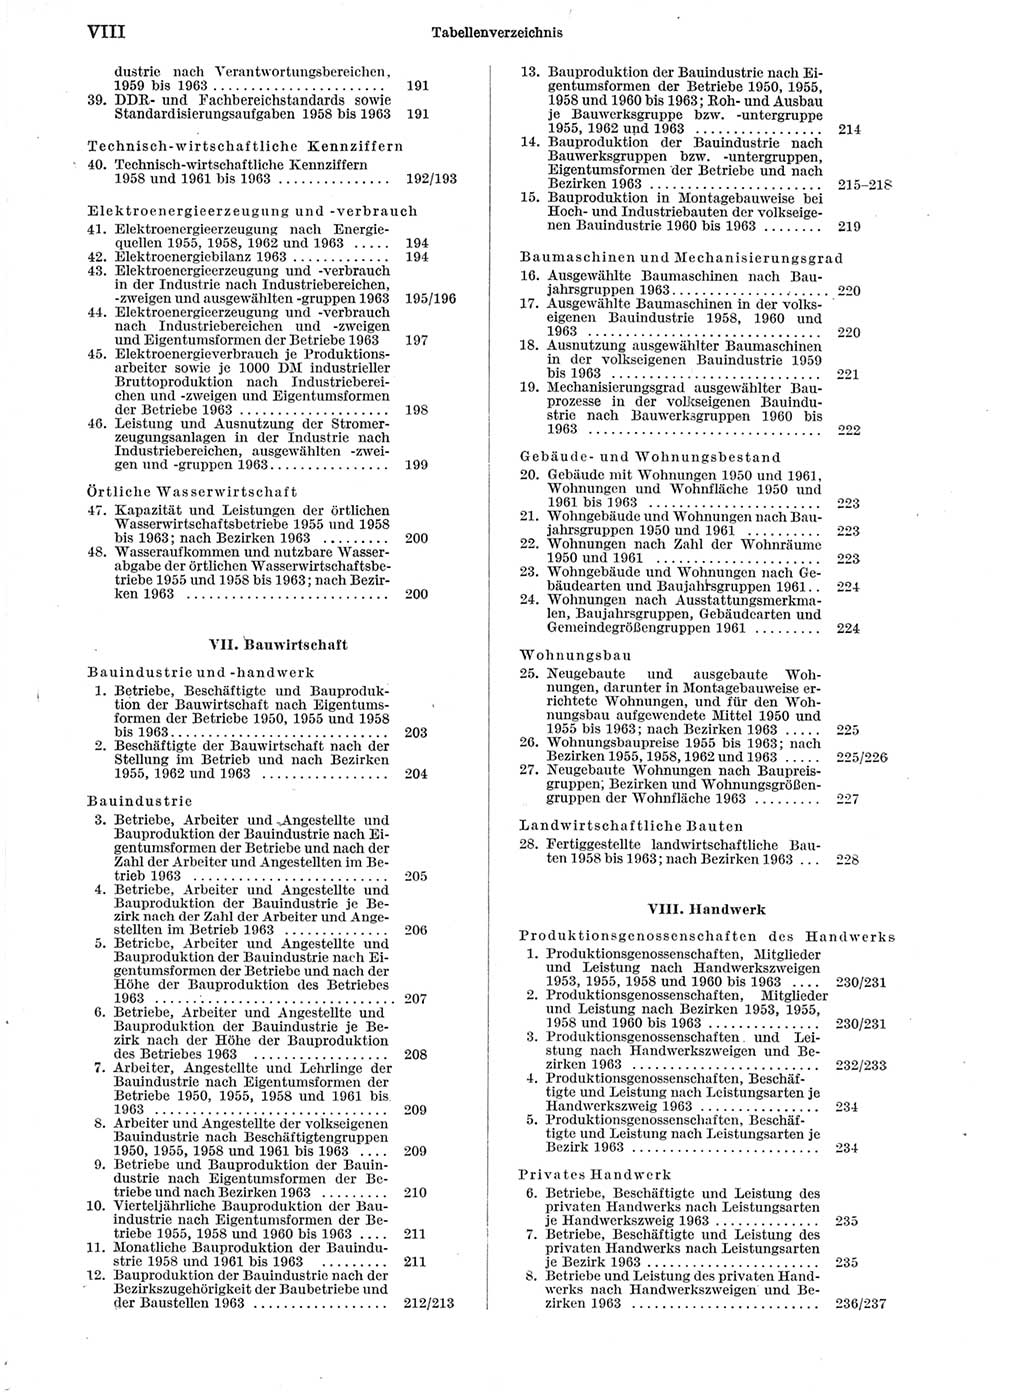 Statistisches Jahrbuch der Deutschen Demokratischen Republik (DDR) 1964, Seite 8 (Stat. Jb. DDR 1964, S. 8)